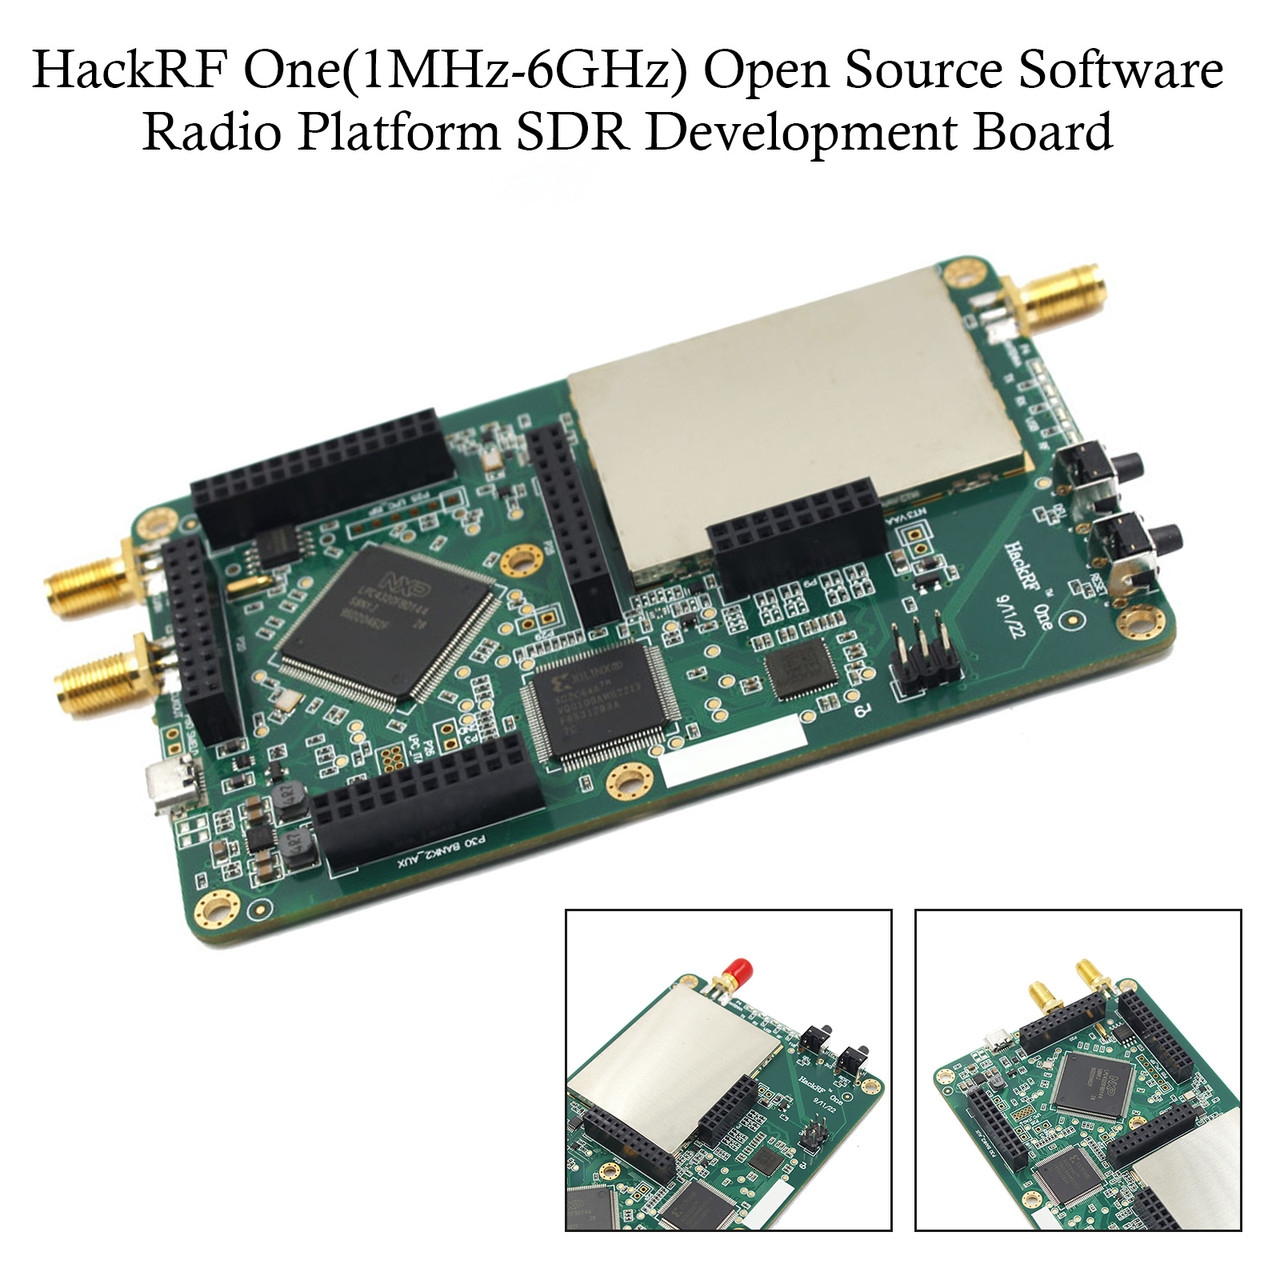 HackRF One 1MHz-6GHz Open Source Software Radio Platform SDR Development Board